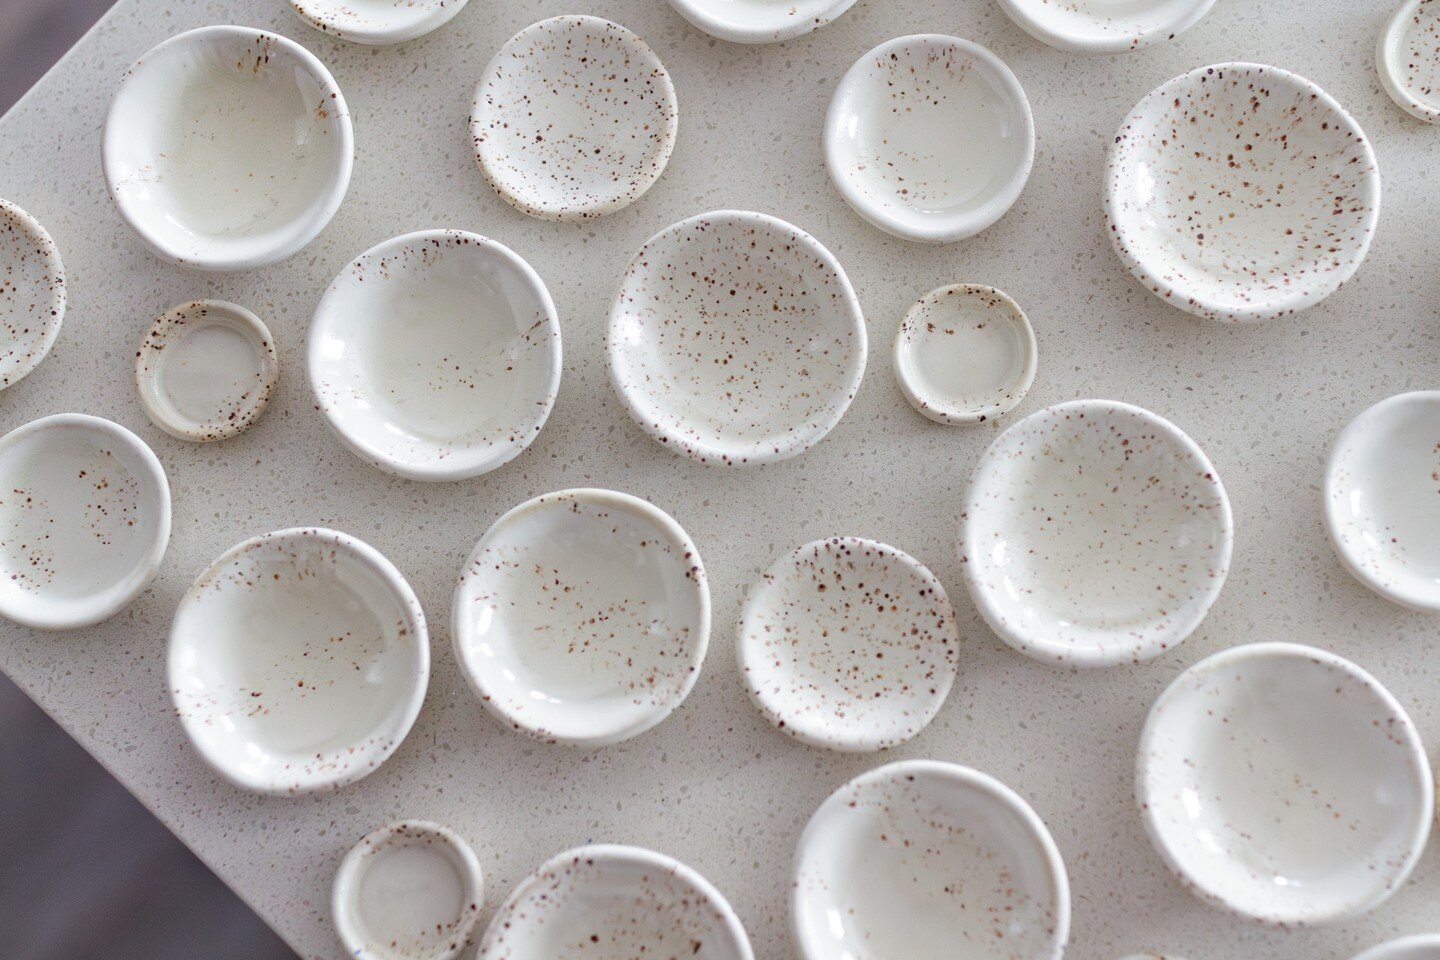 So many tiny bowls.

#ceramic #pottery #kitchenware #clay #handmade